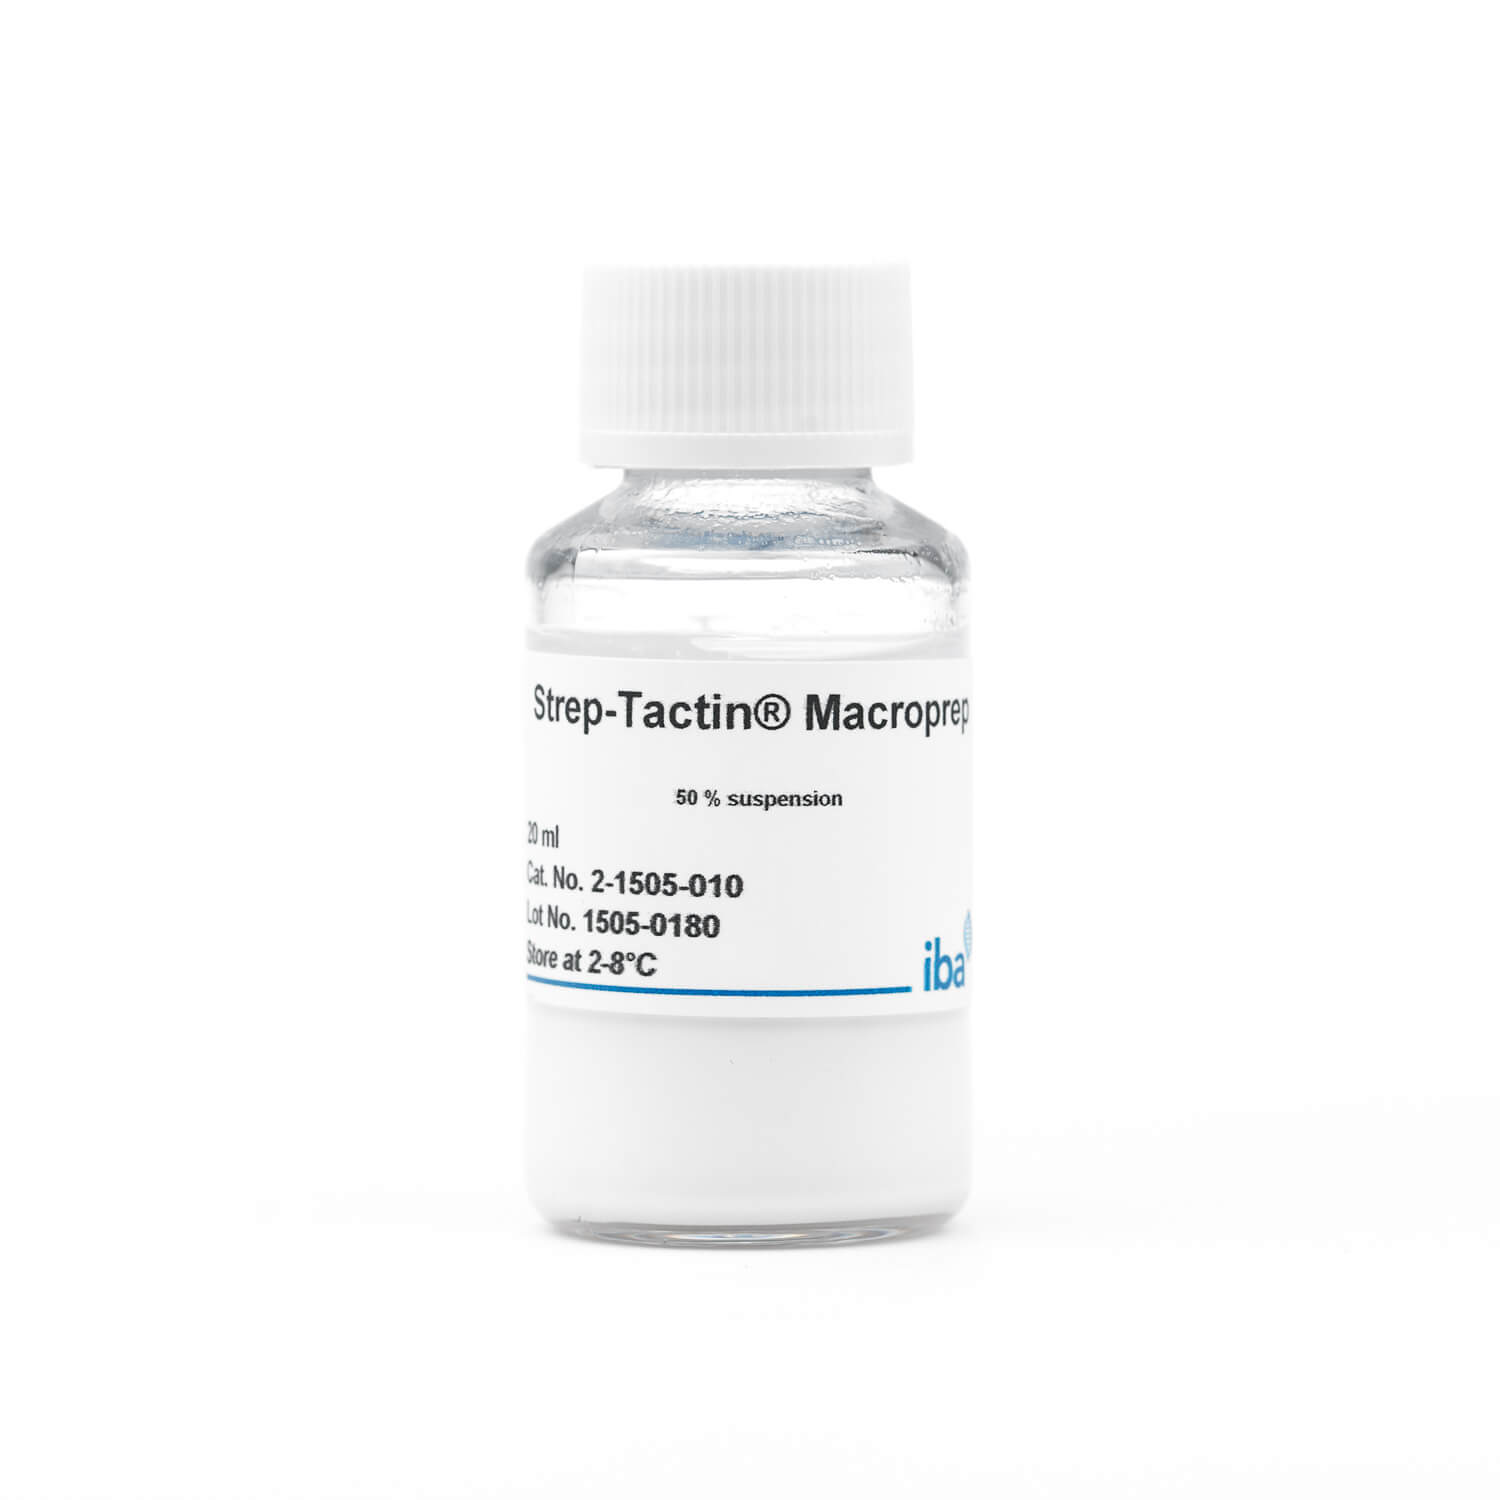 Strep-Tactin® MacroPrep® resin